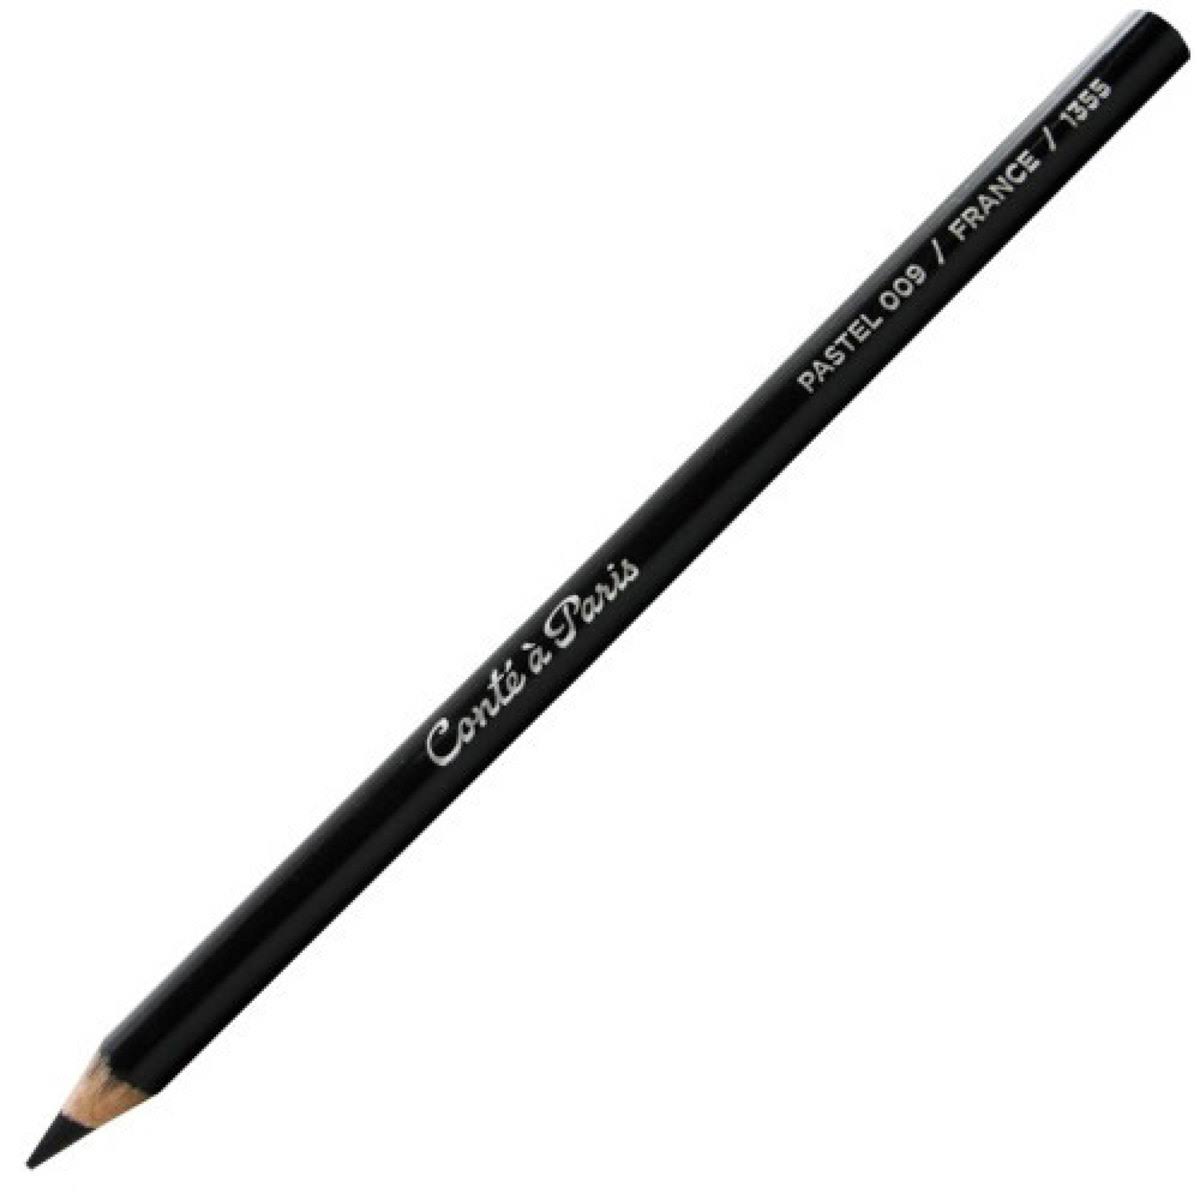 Cont Paris Pastel Pencil - Black